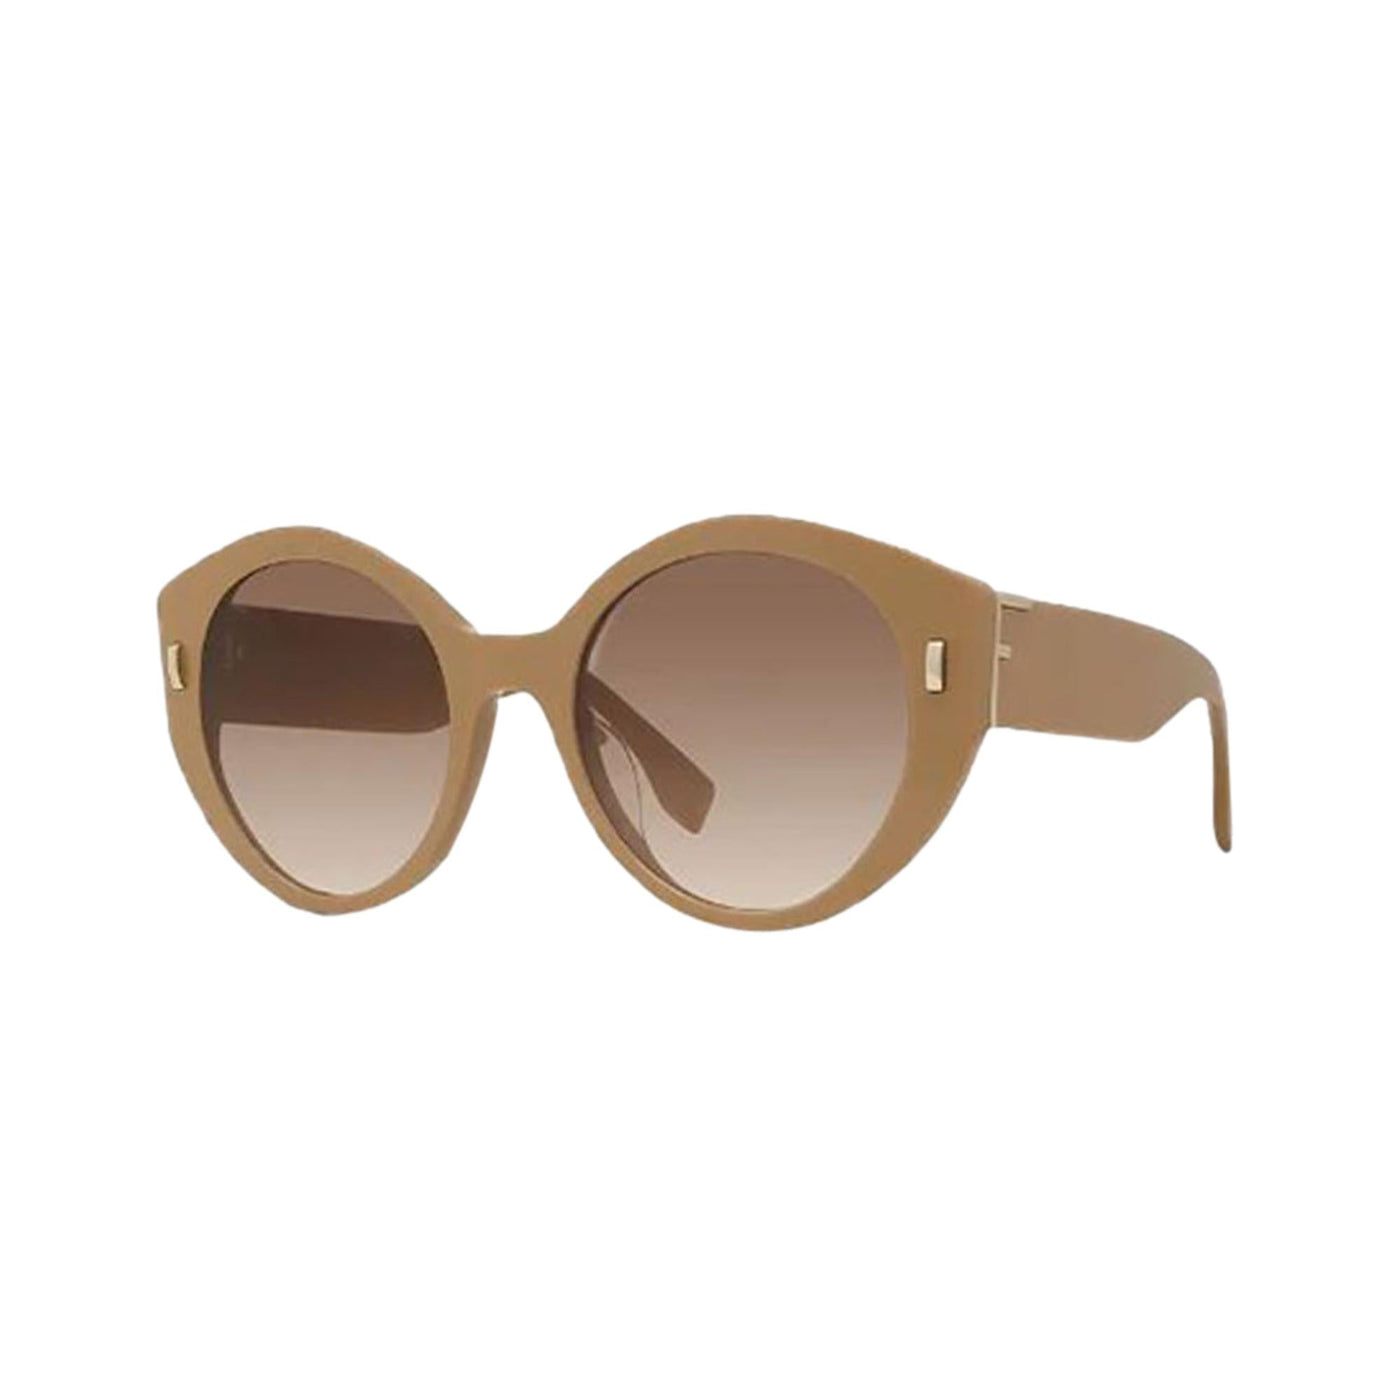 Fendi First Dark Beige Acetate Round Frame Tinted Sunglasses - LUXURYMRKT